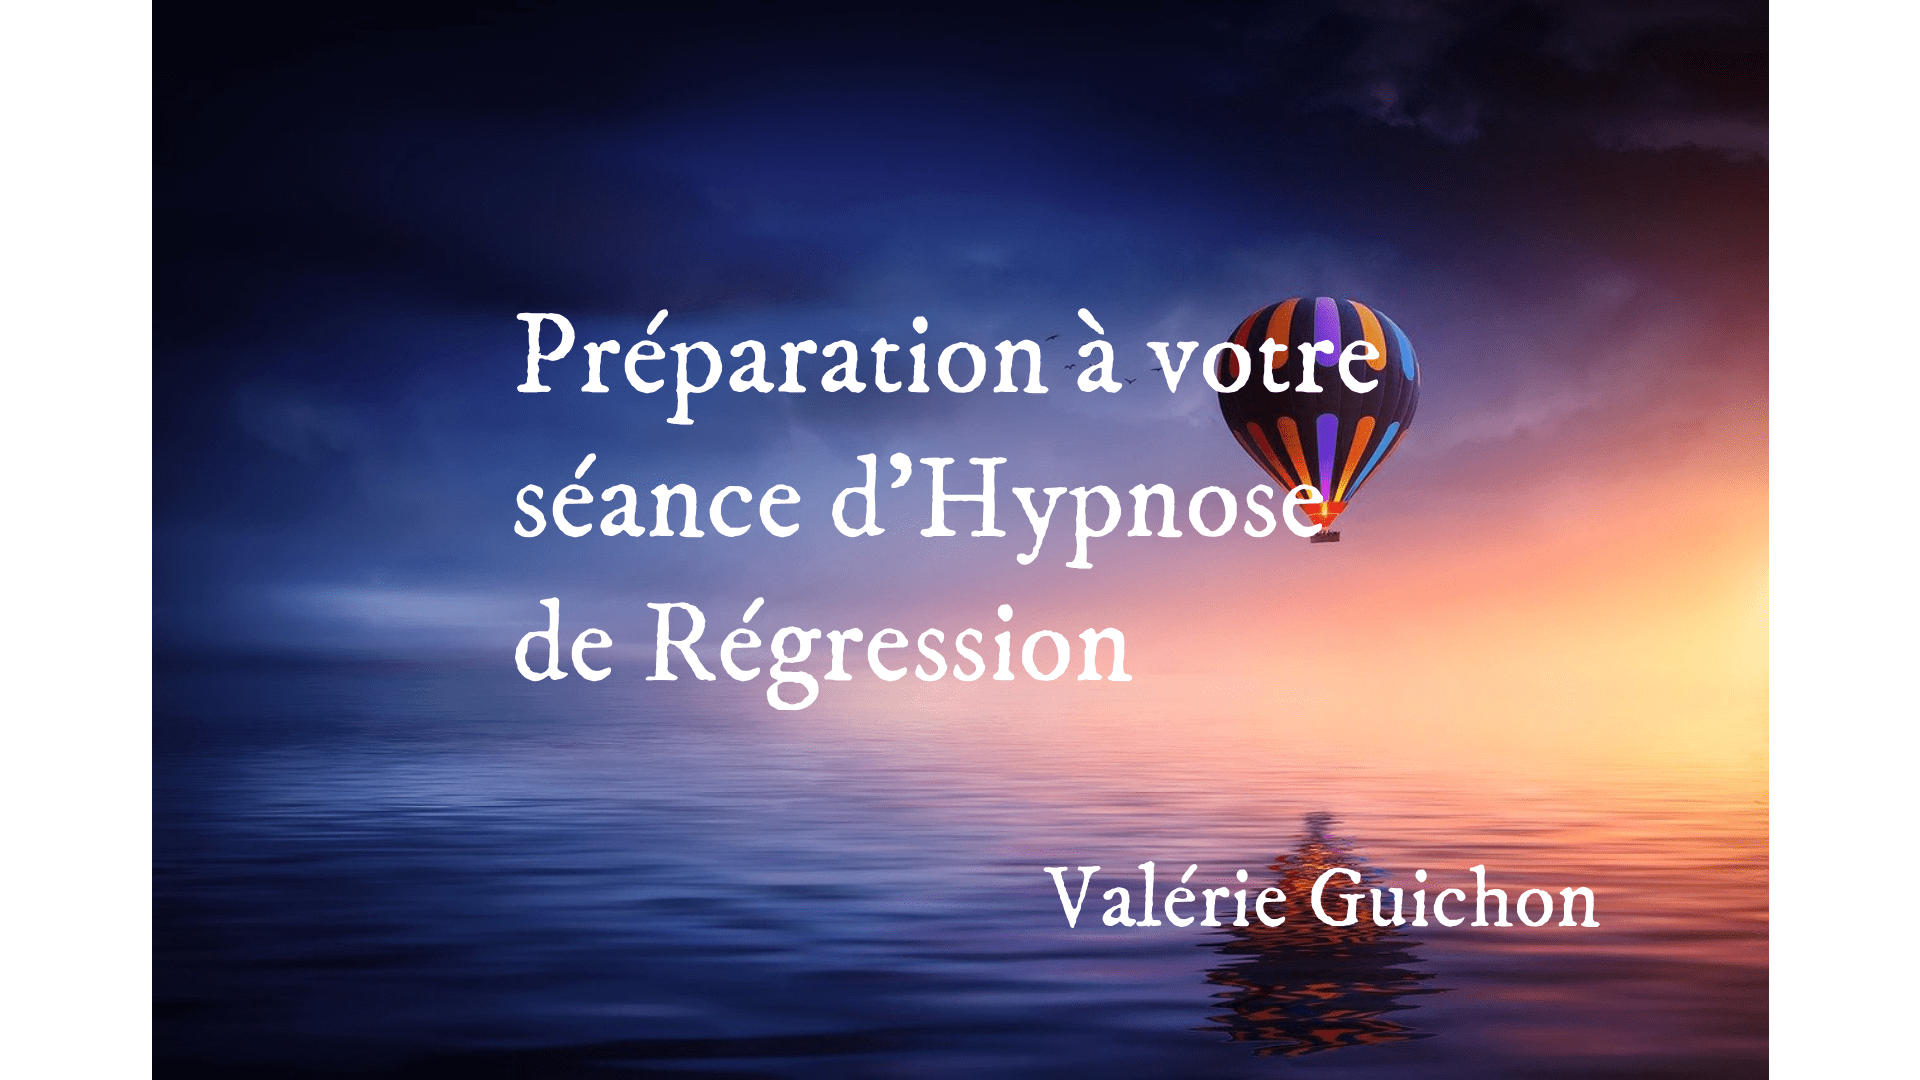 https://therapie-holistique-bretagne.com/wp-content/uploads/2022/09/preparation-hypnose-de-regression-valerie-guichon.png